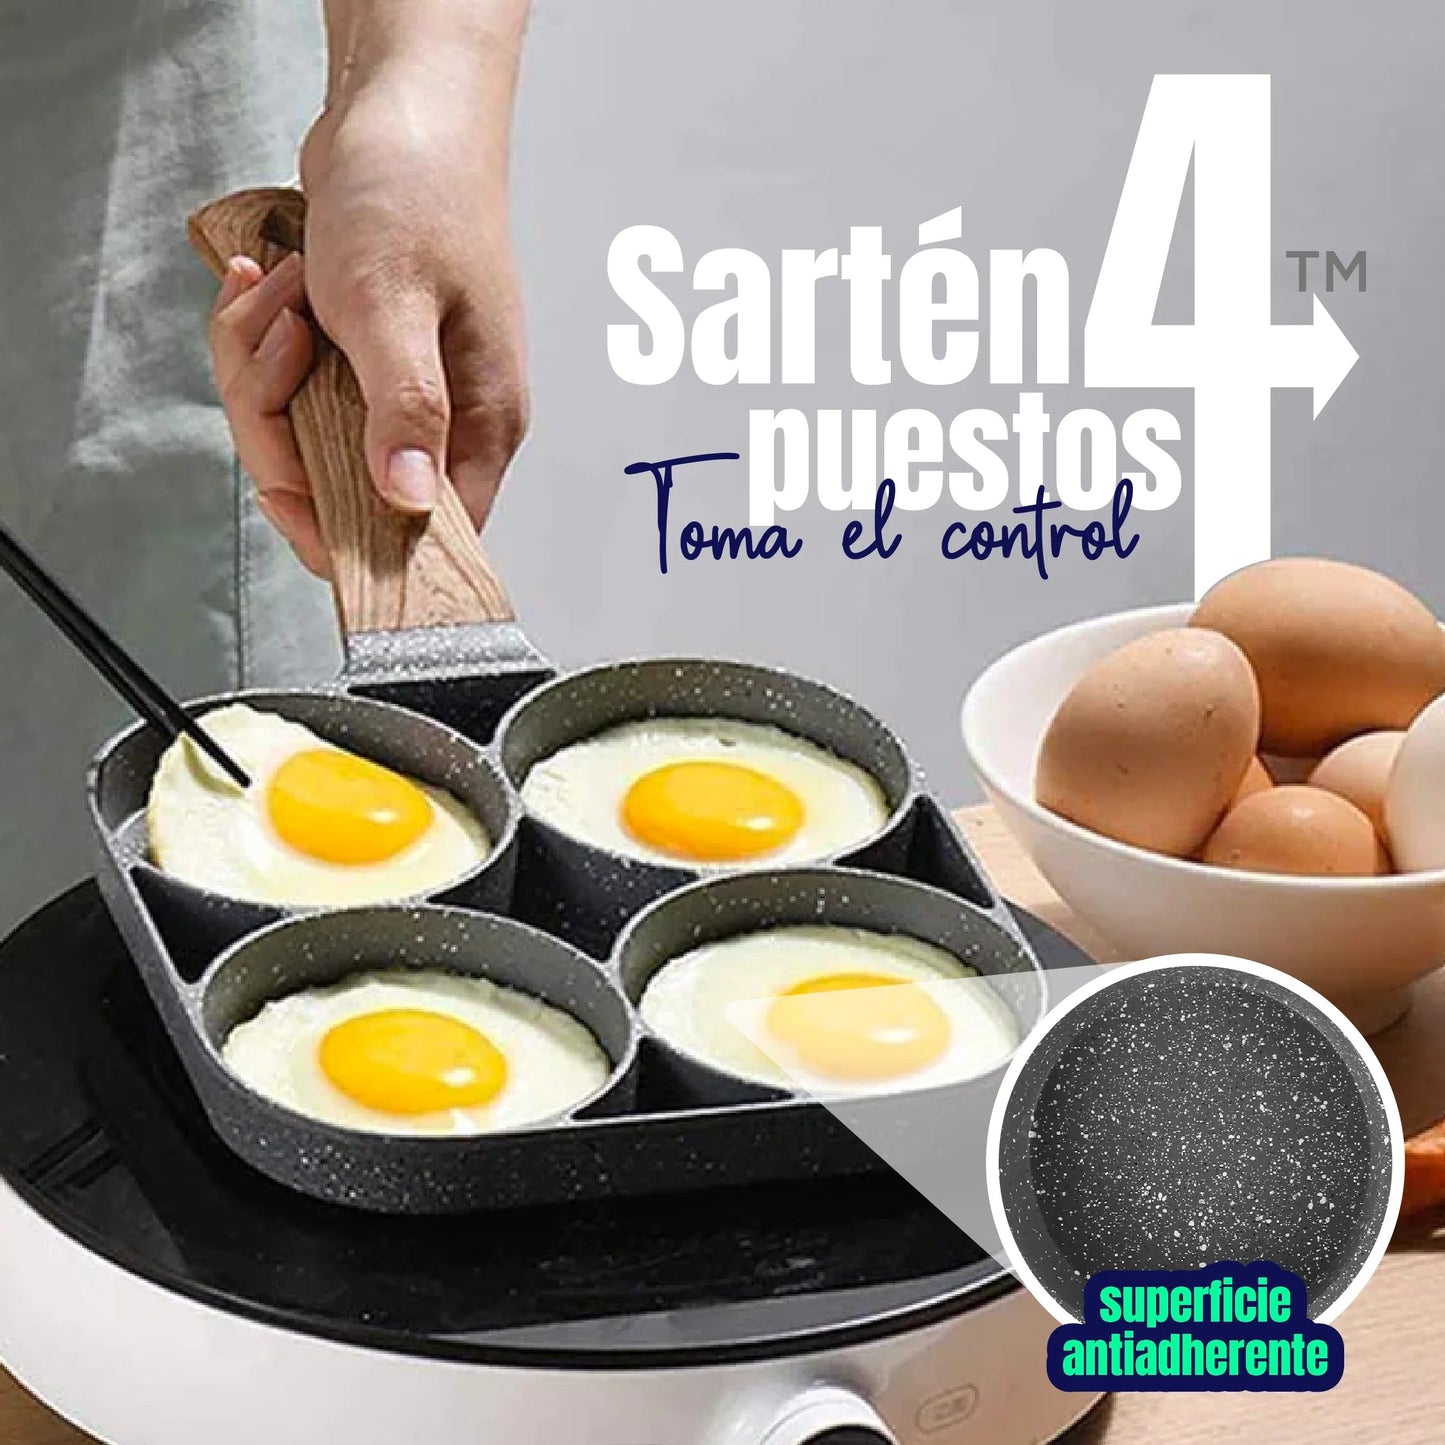 Sarten Antiadherente 4 Puestos Para Huevos Arepas